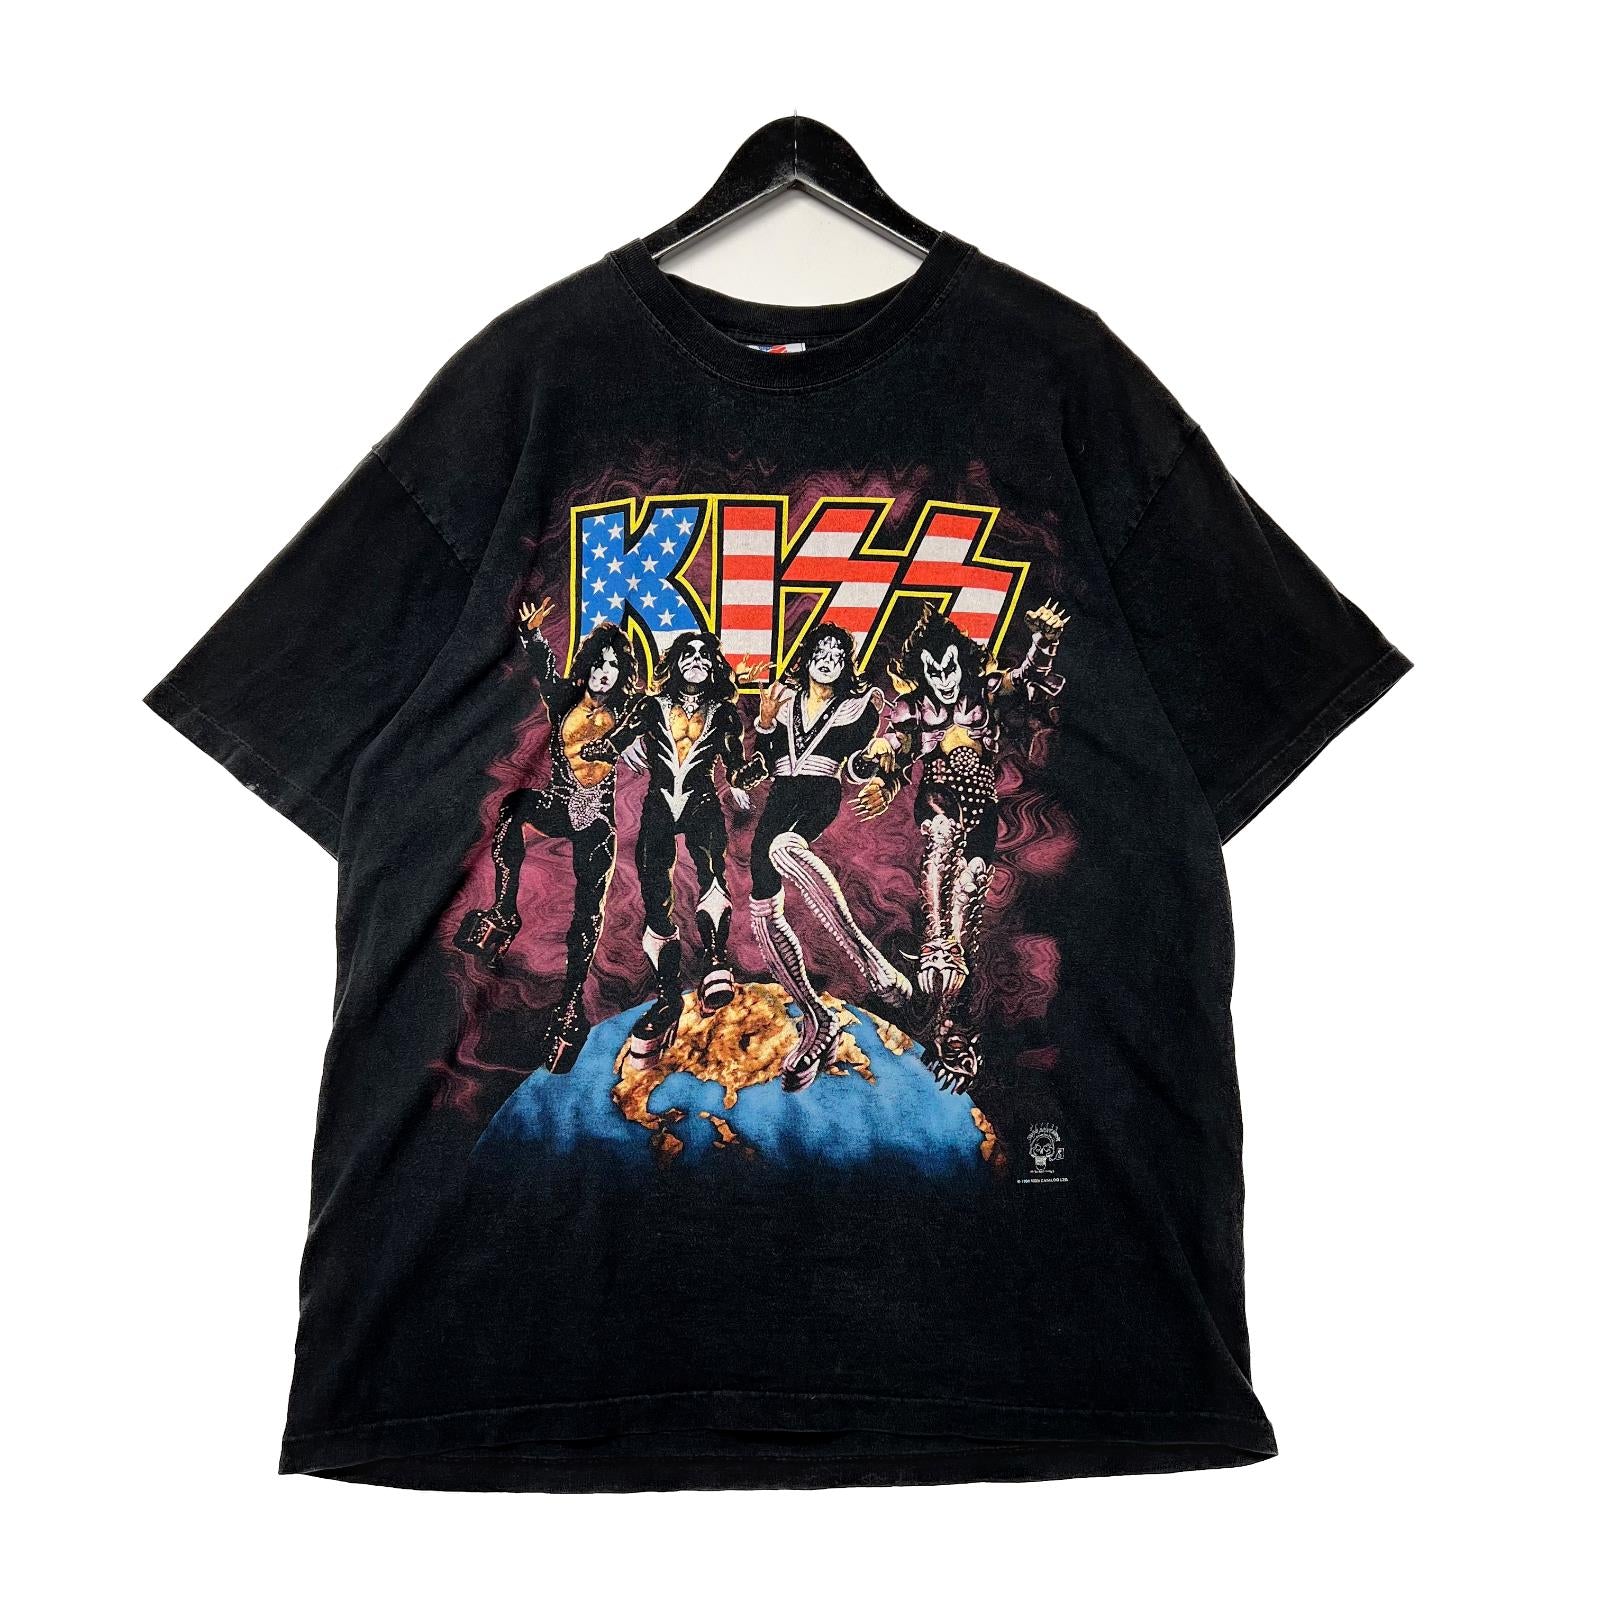 Vintage 1996 Kiss Black T-shirt Size XL USA World Tour Rock Band